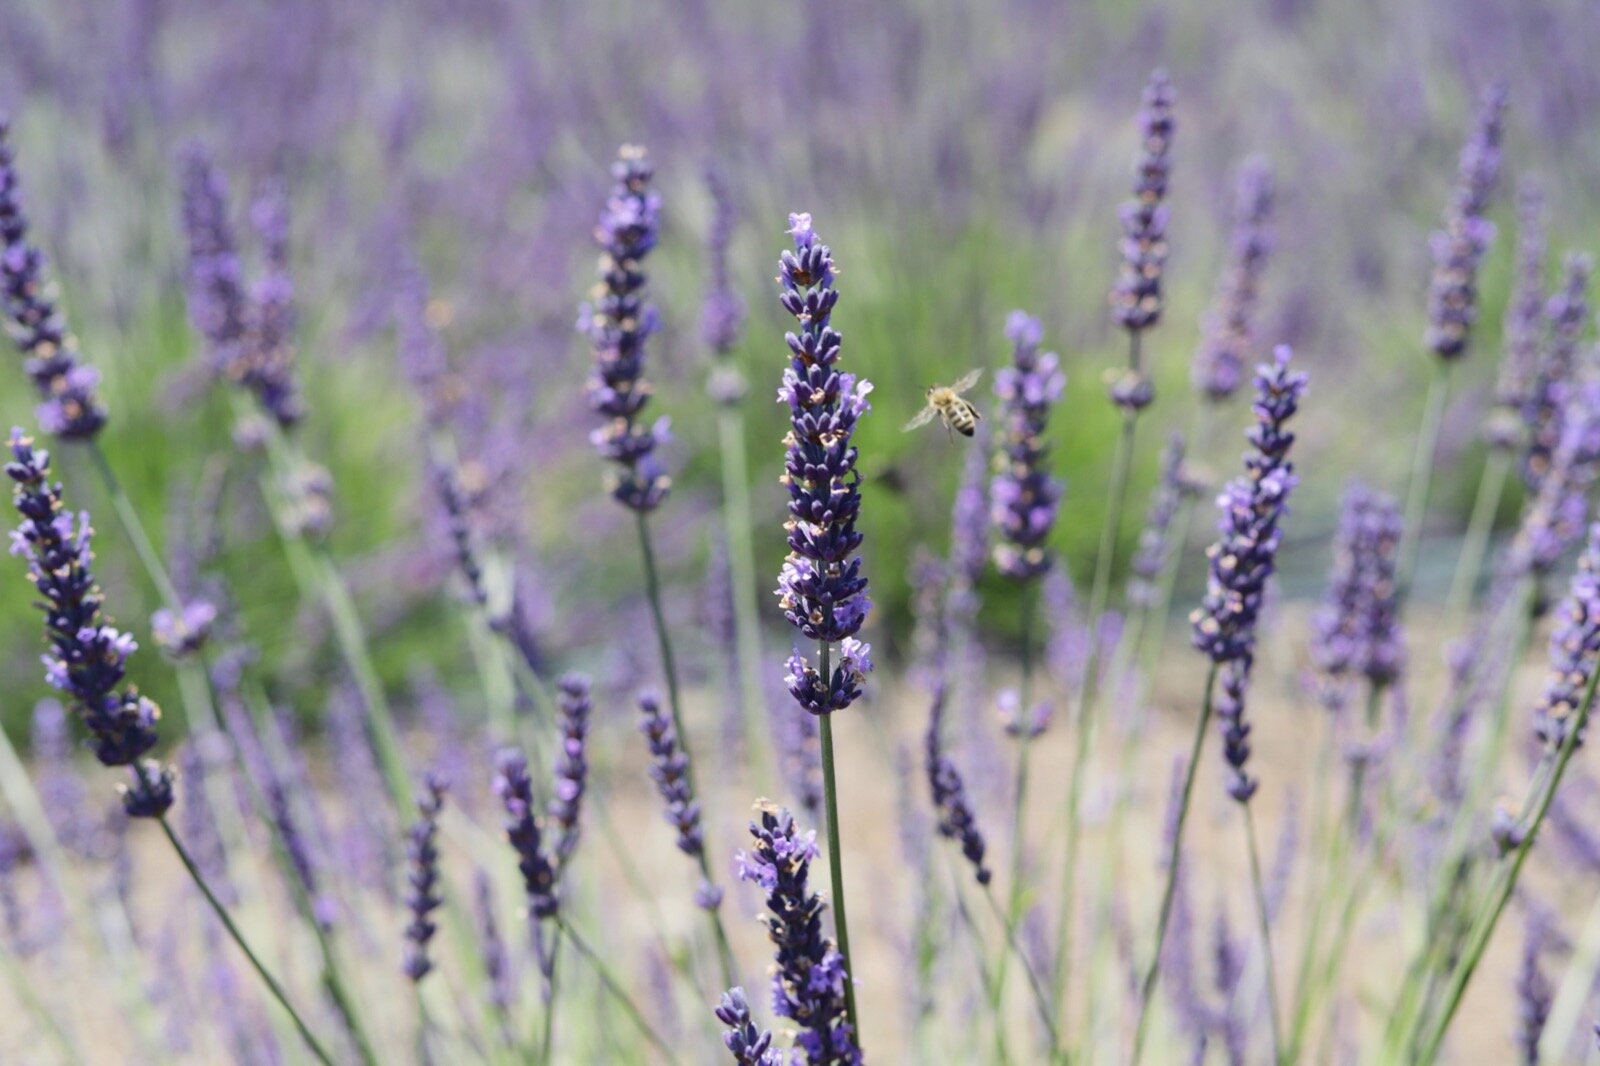 lavender fields near los angeles, u-pick lavender, golden state apothecary, santa rita hills lavender farm, lompoc, where to pick lavender in la, lments of style, la blogger